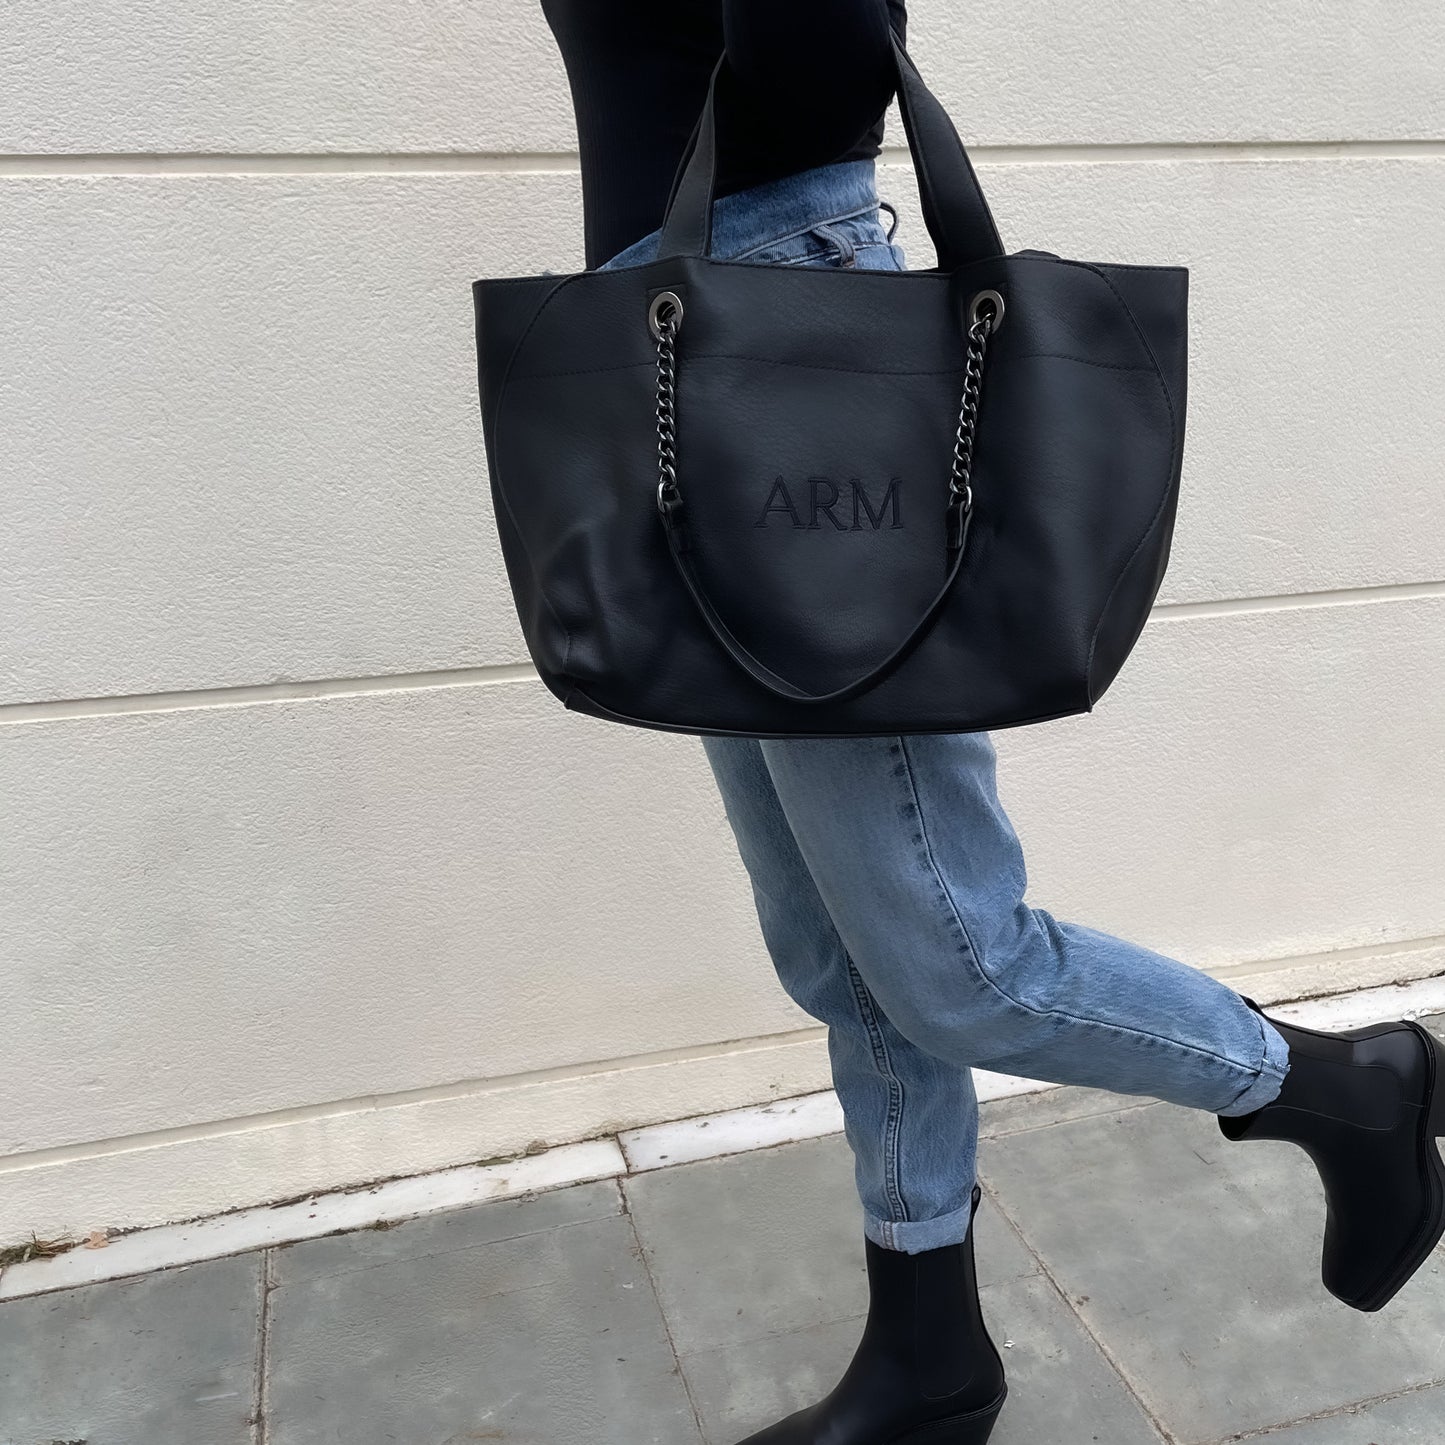 Handbag cadenas personalizado negro con iniciales bordadas